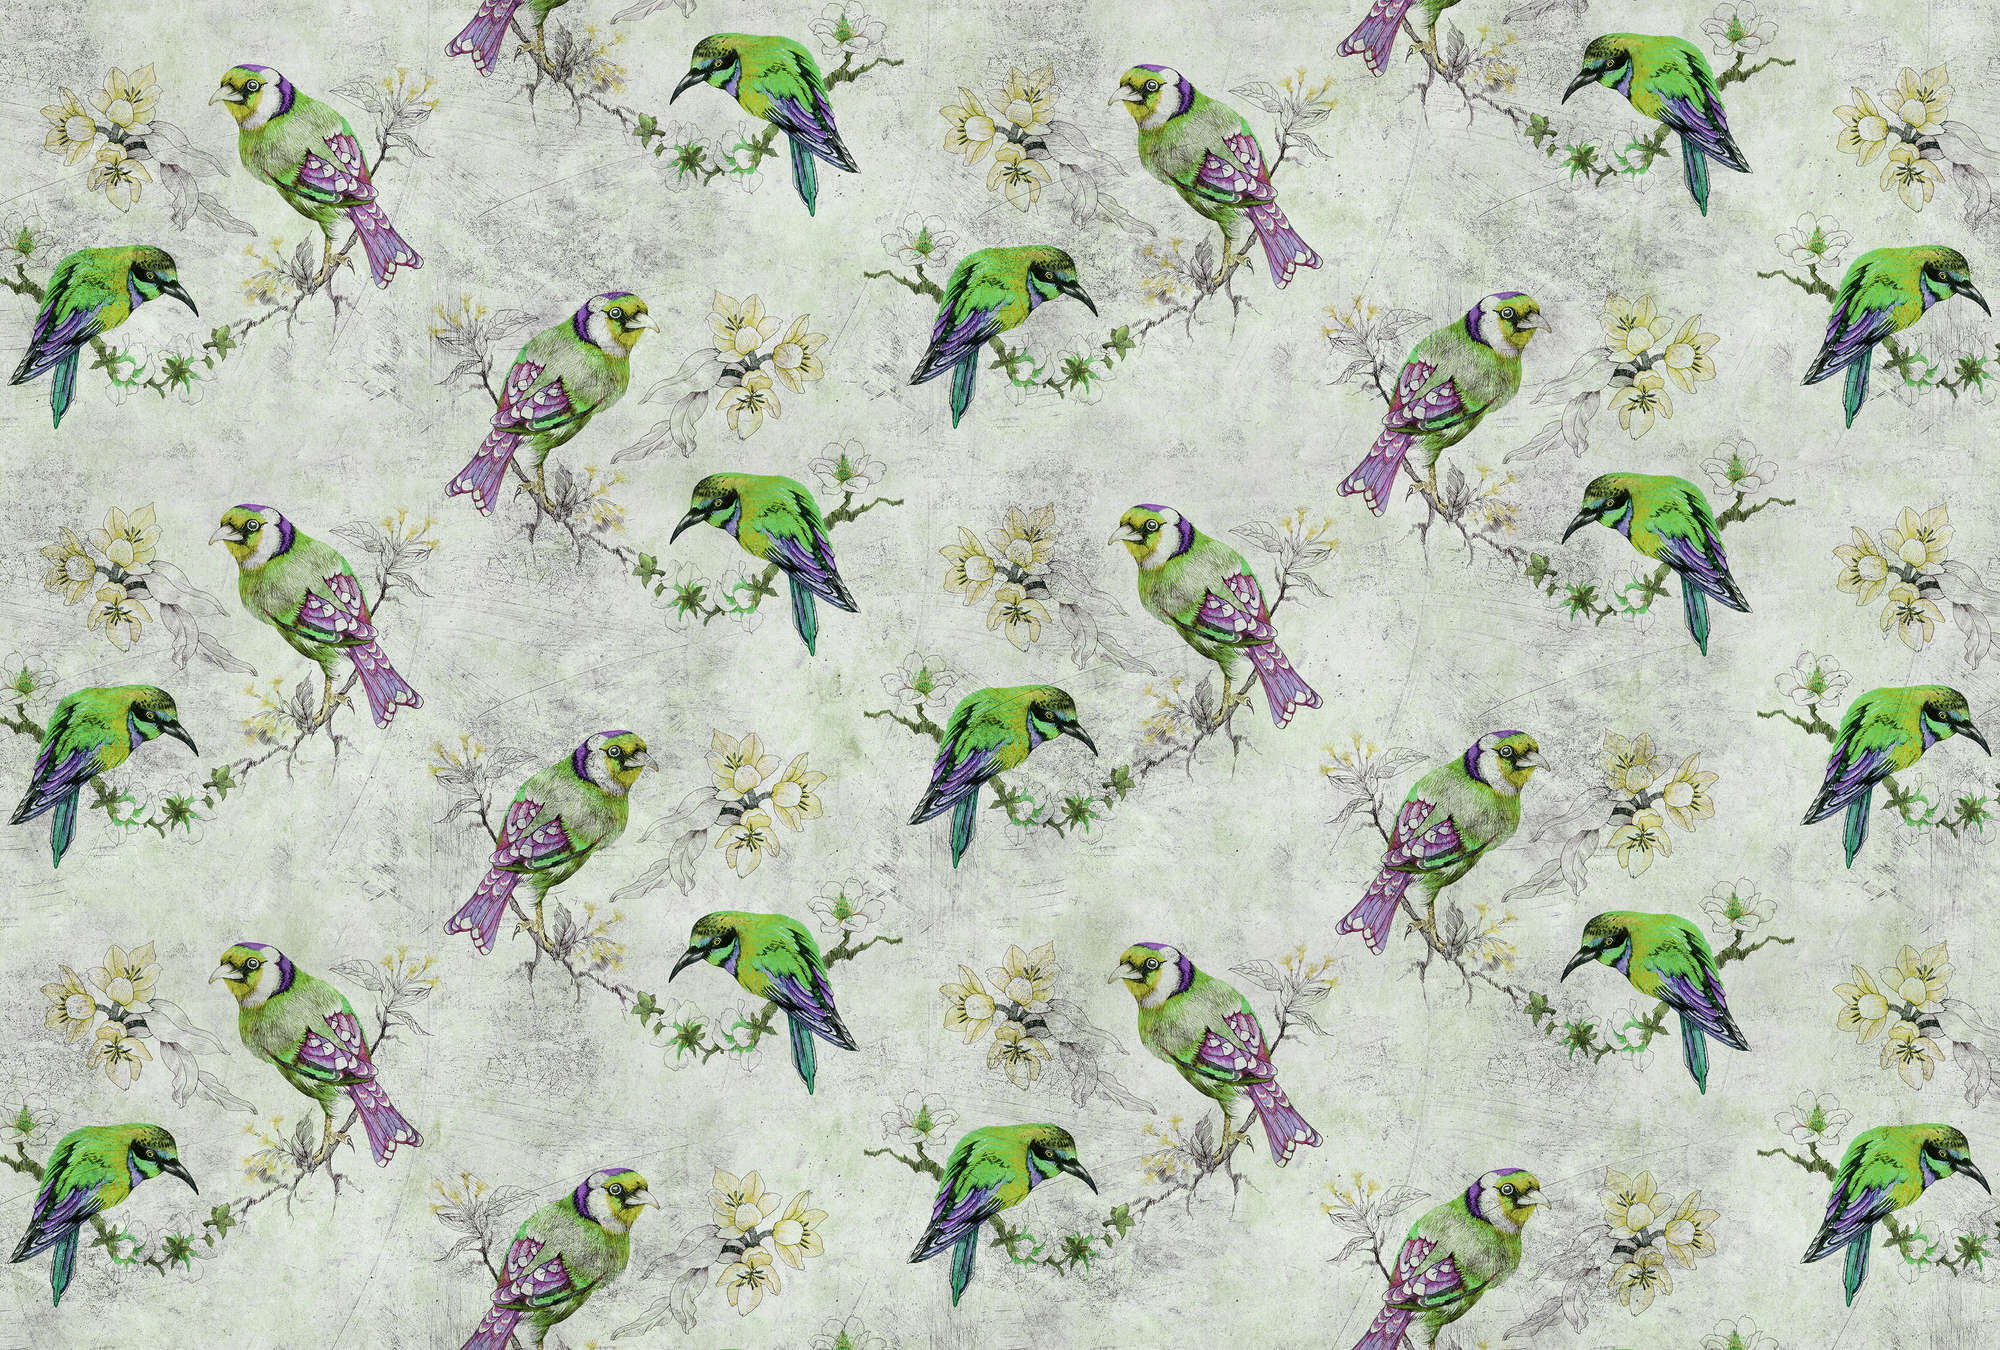             Love birds 2 - Papier peint coloré à texture craquelée avec des oiseaux esquissés - gris, vert | Intissé lisse mat
        